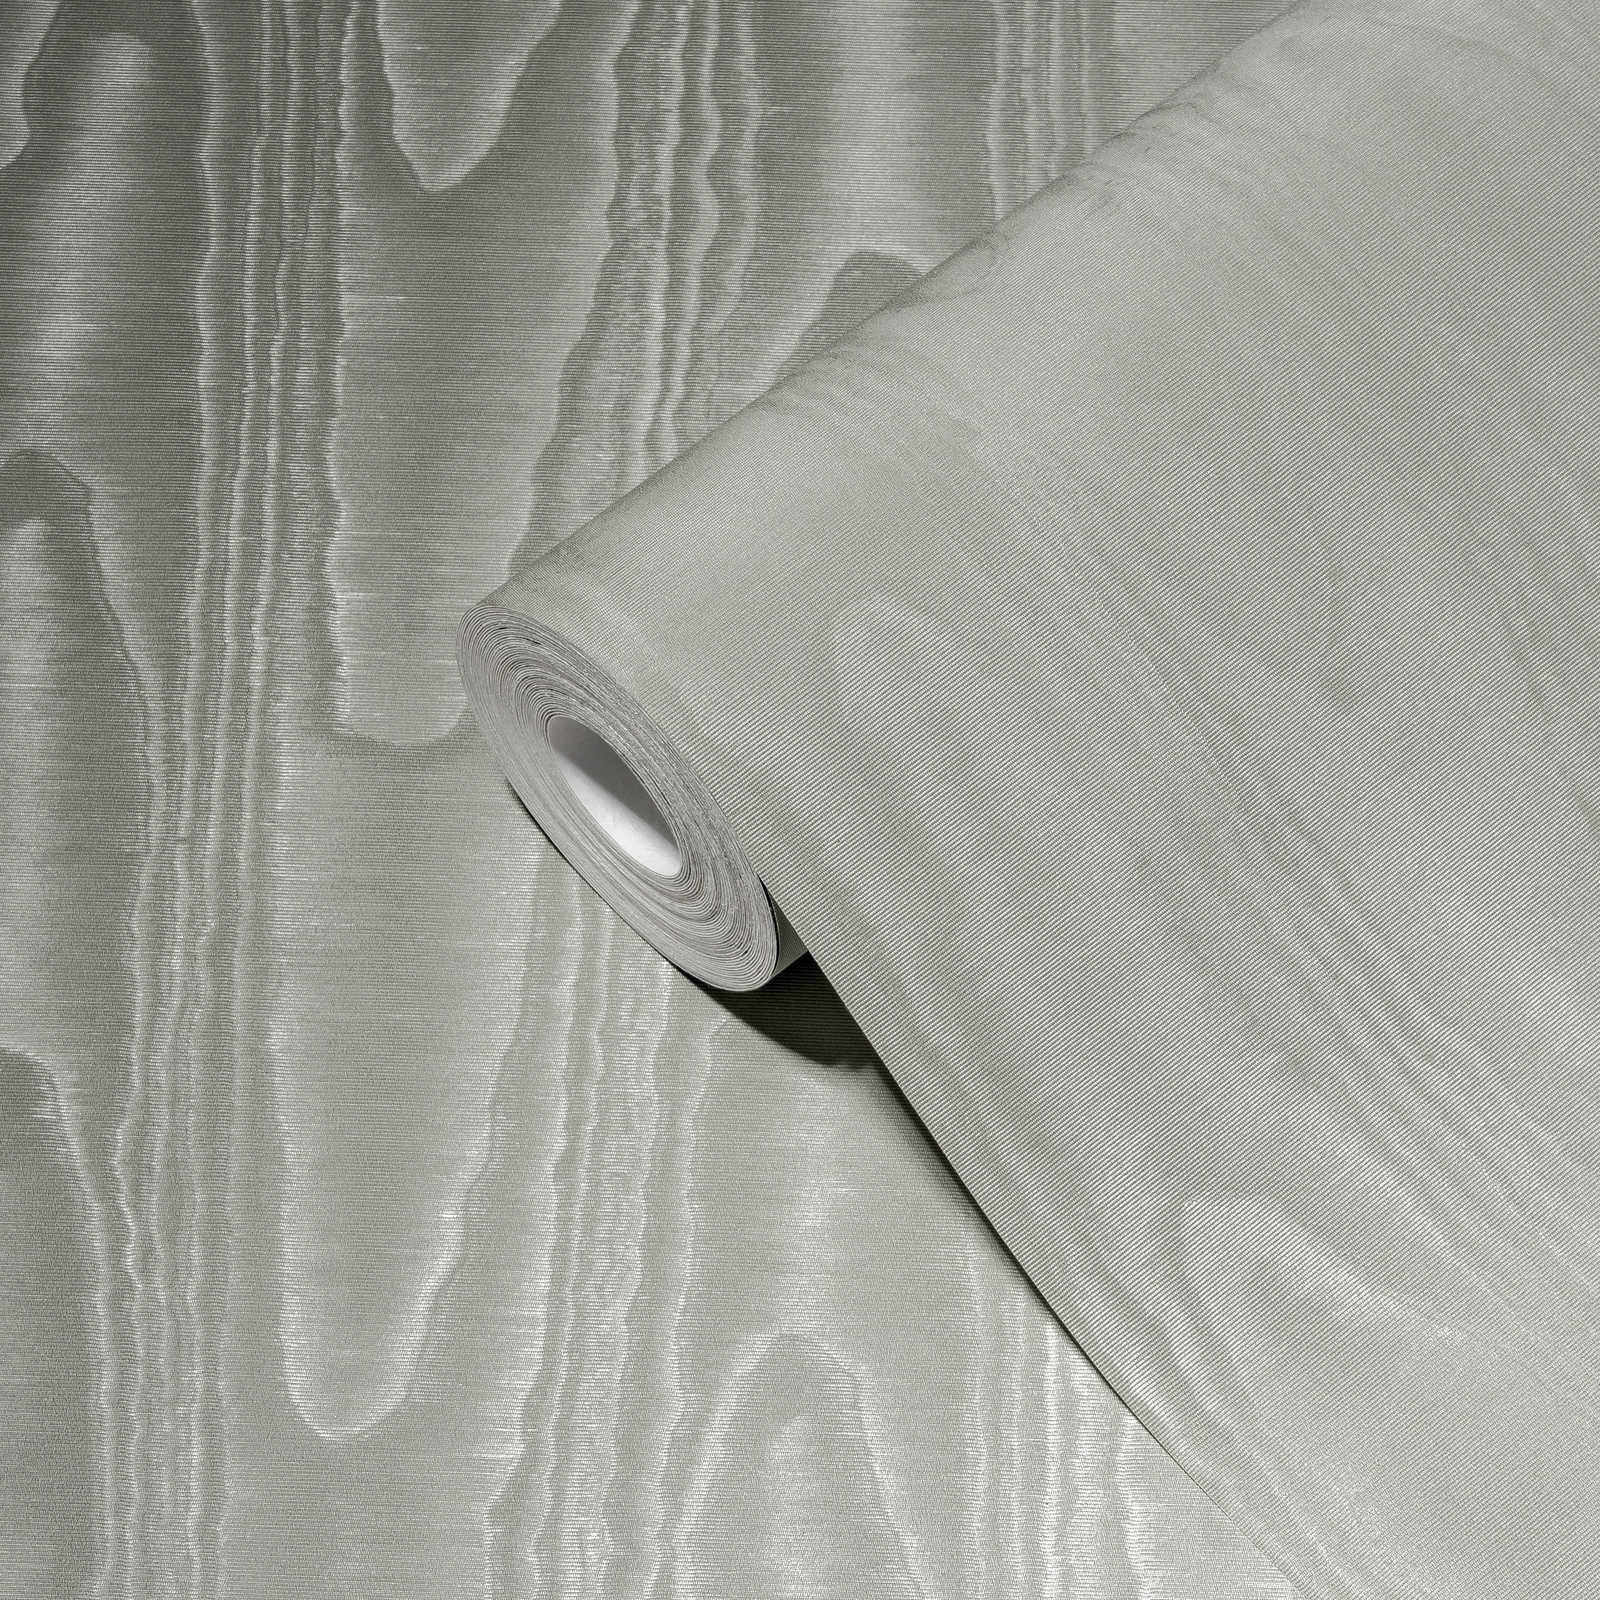             Silver grey wallpaper silk moiré & wave pattern - grey
        